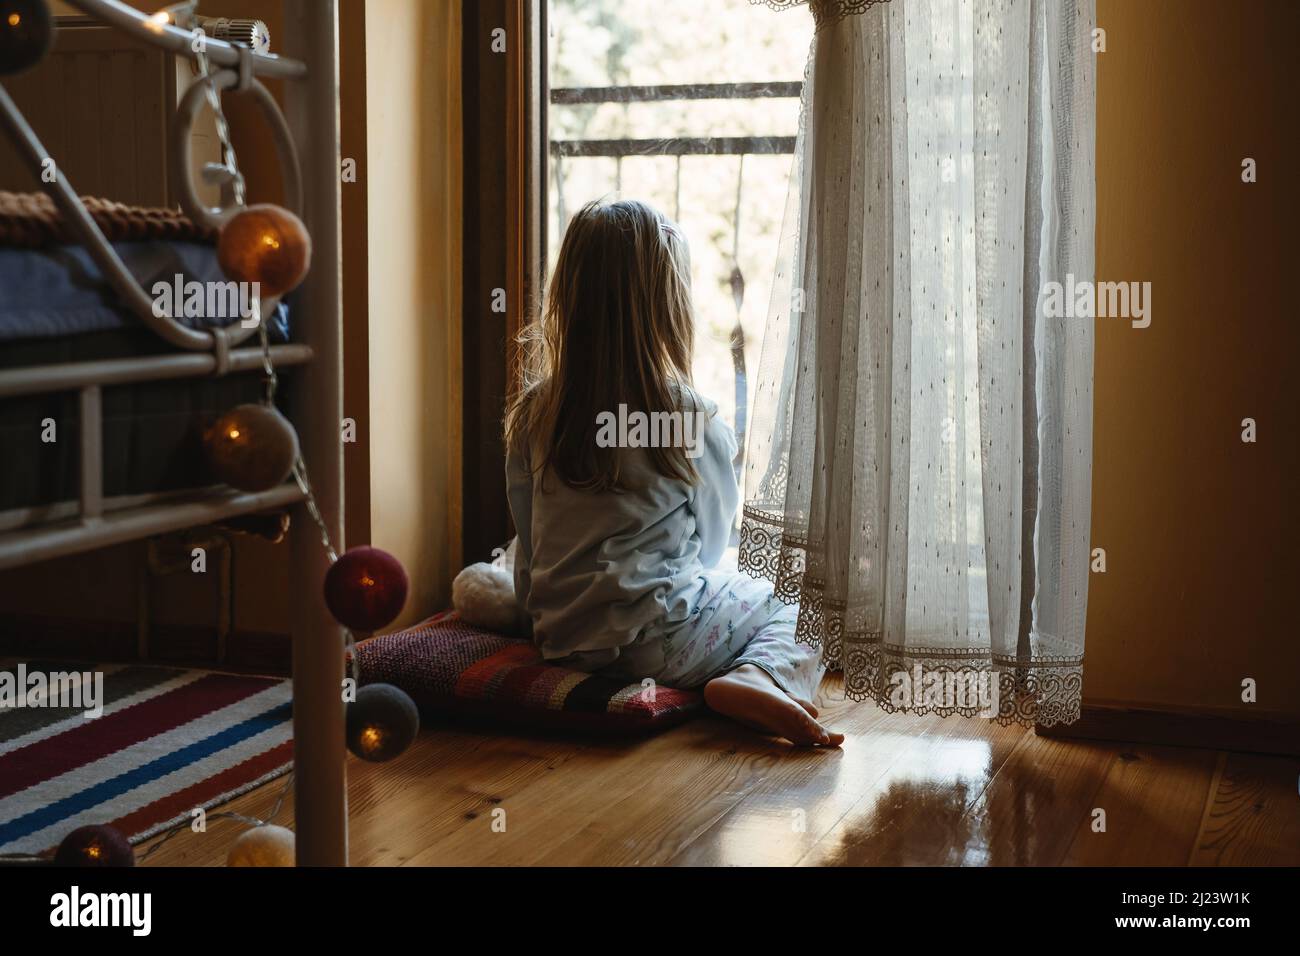 Kind sitzt auf dem Boden und spielt Ameise nach Hause. Verträumte, sonnige Stimmung. Mädchen, das von hinten durch das Fenster schaut. Niedliches Kind wartet darauf, spazieren zu gehen Stockfoto